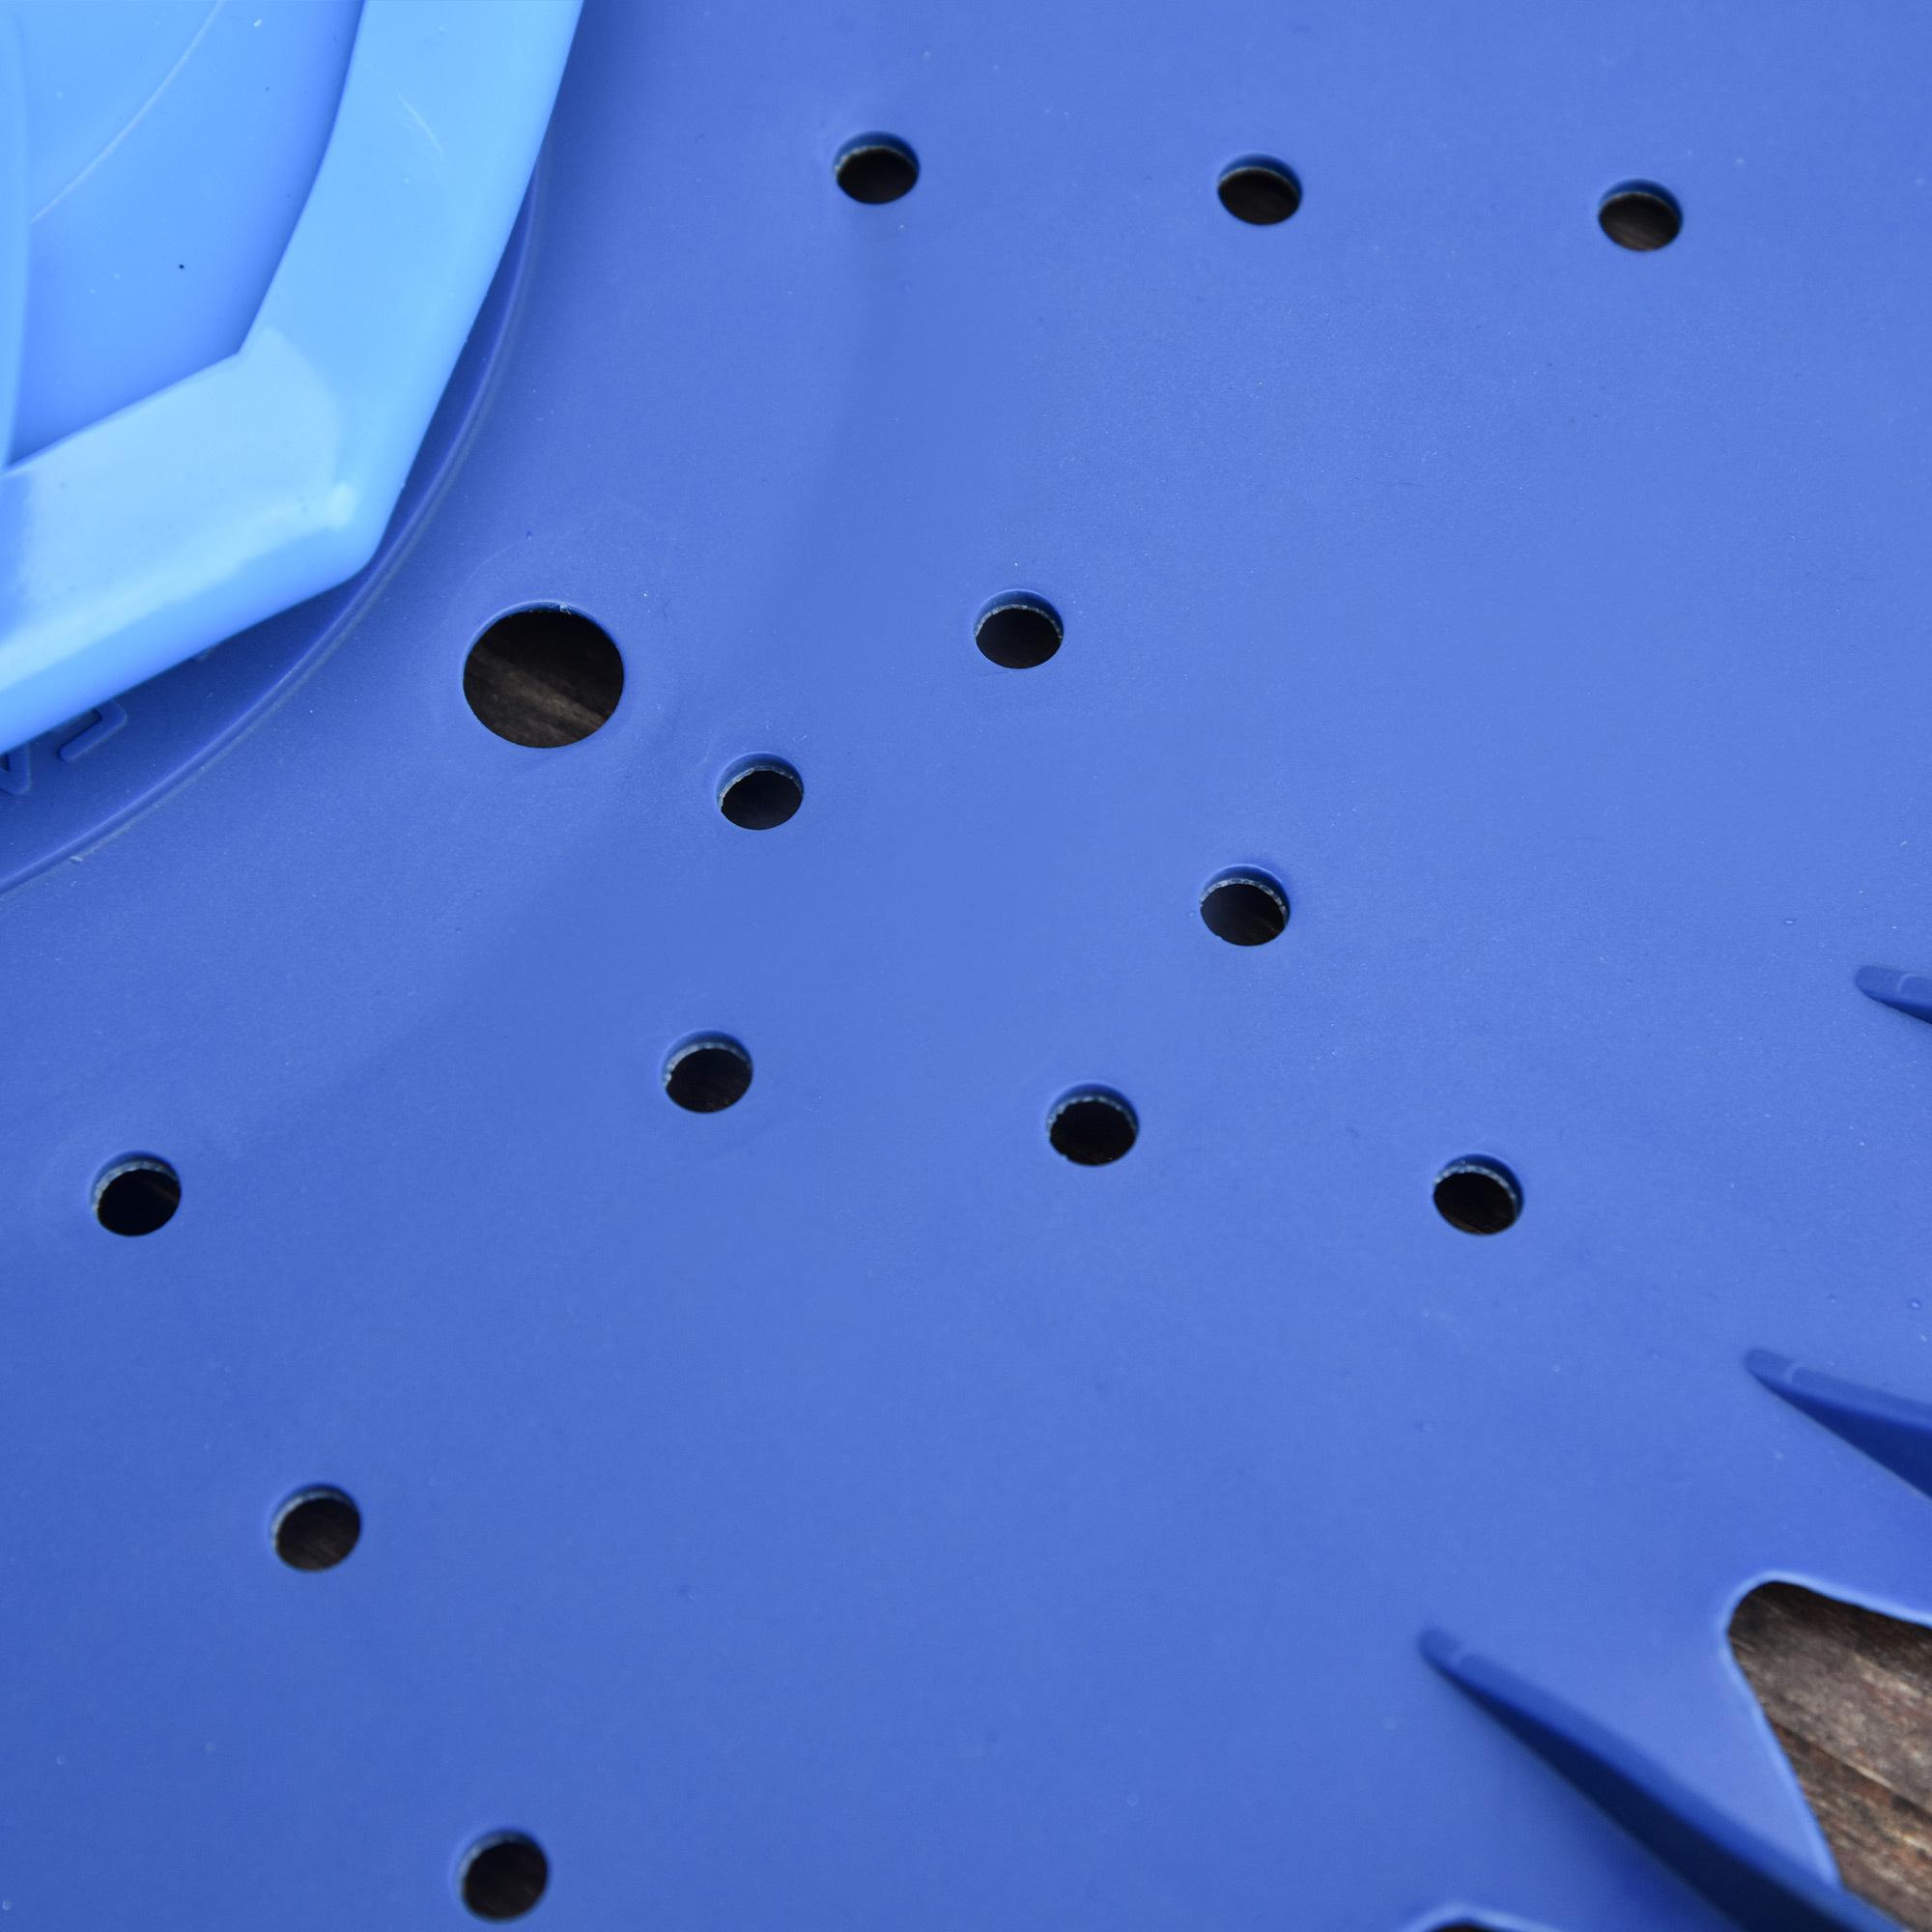 Nettoyeur aspirateur piscine - robot de piscine hydraulique automatique - branchement pompe 370-1100 W max. - ABS TPU bleu